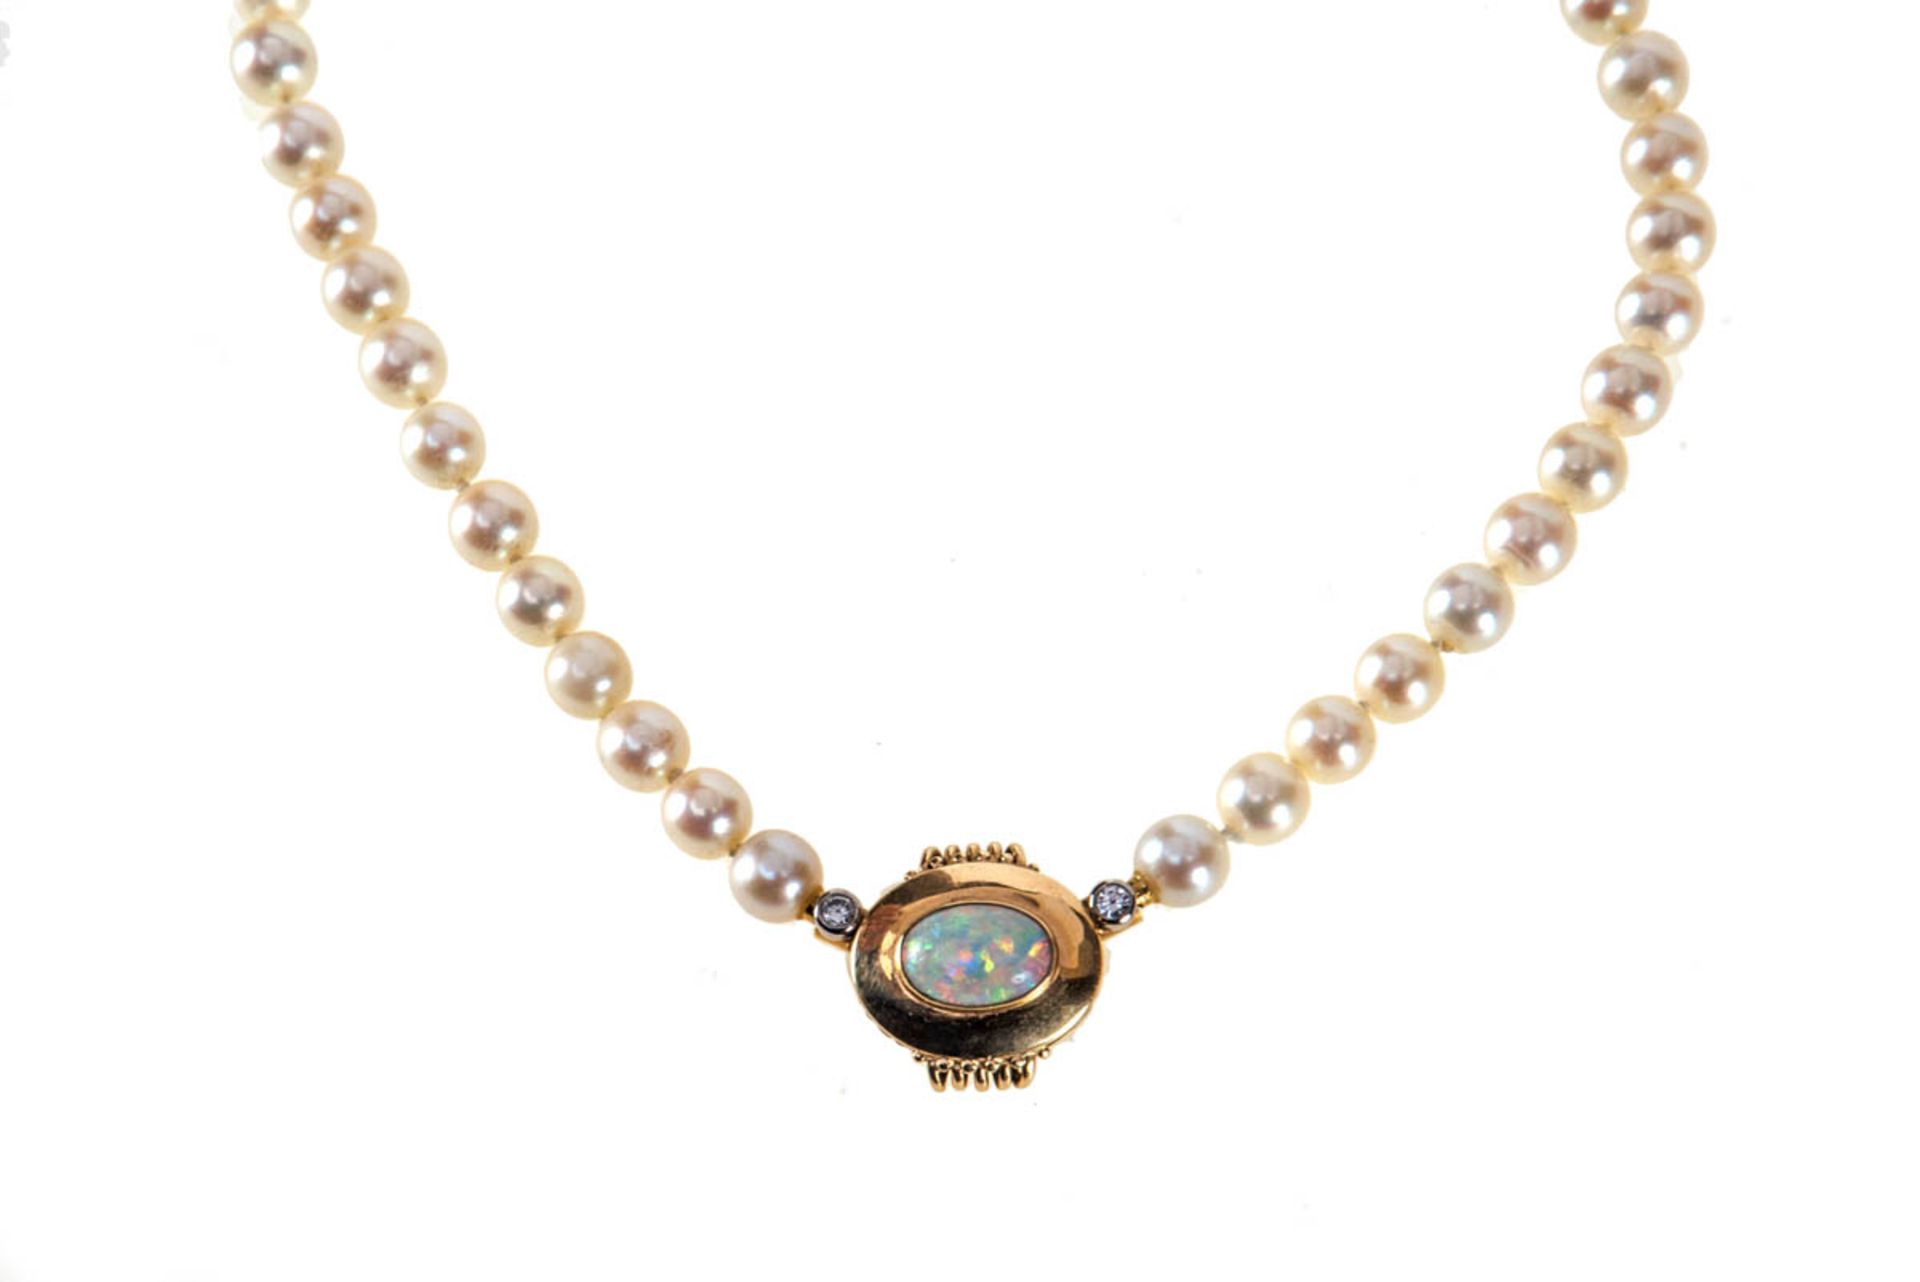 Collier mit Perlen, Opal und BrillantenPerlenkette mit montiert ovalem Anhänger . Mittig mit